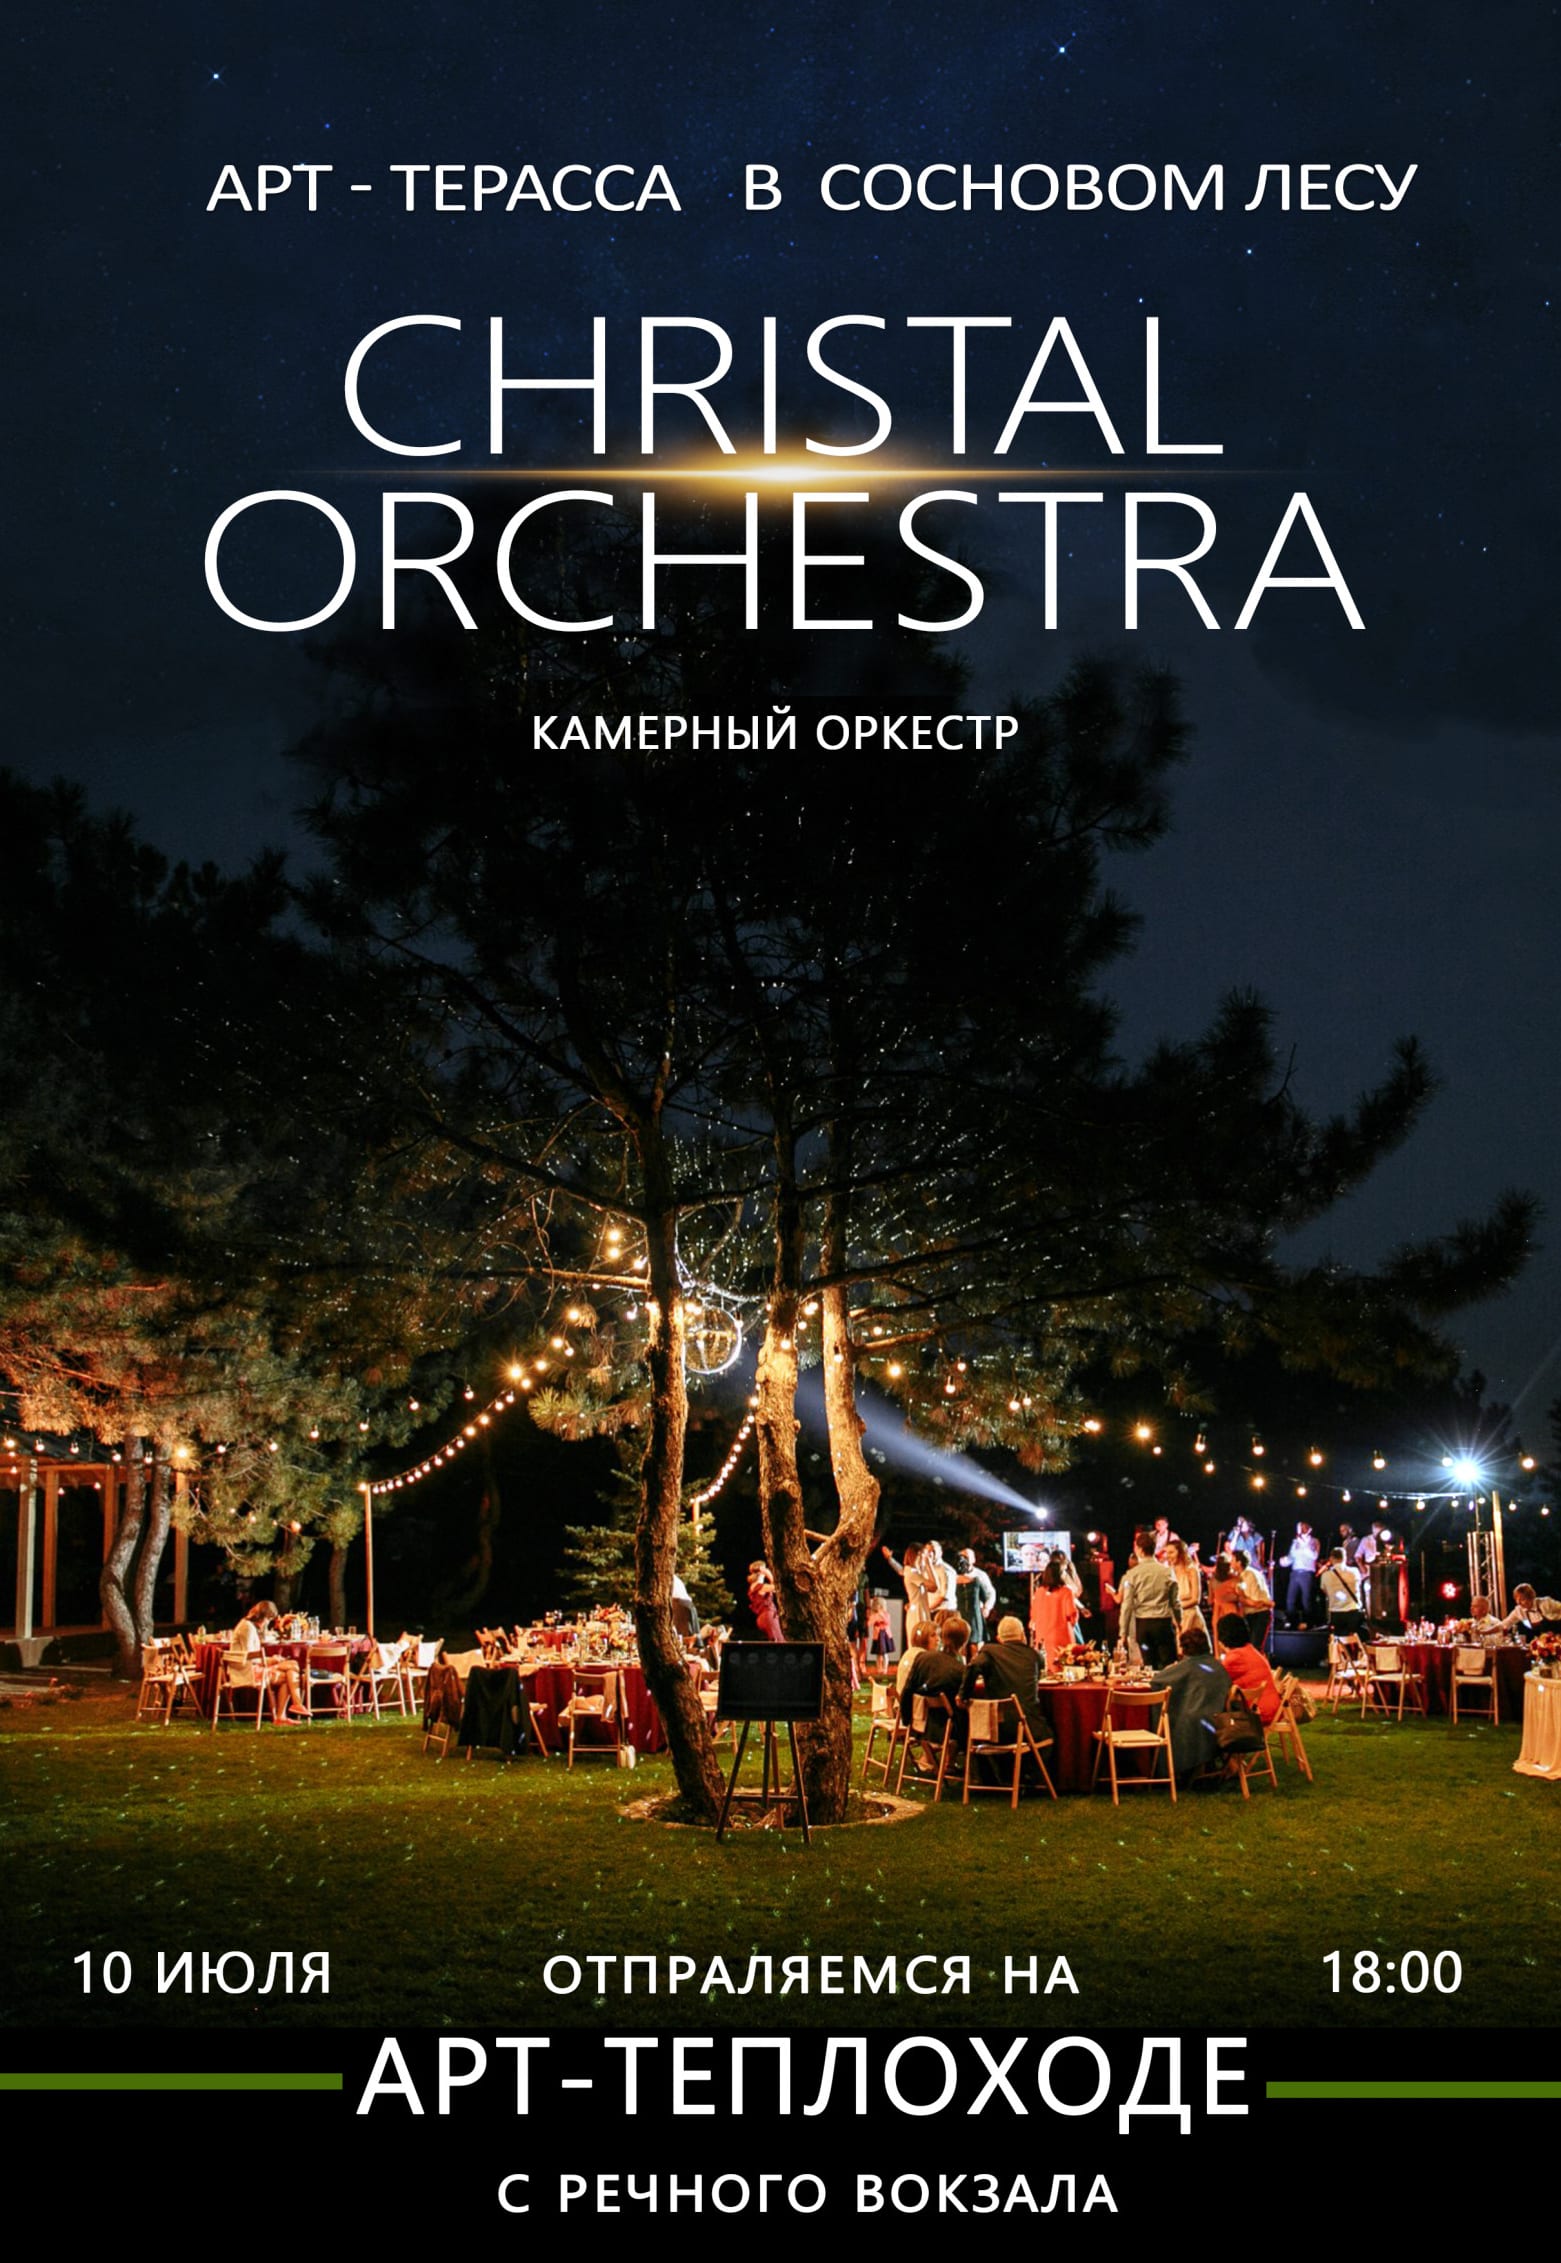 Christal orchestra в сосновом лесу Днепр, 10.07.2020, цена, даты, купить билеты. Афиша Днепра